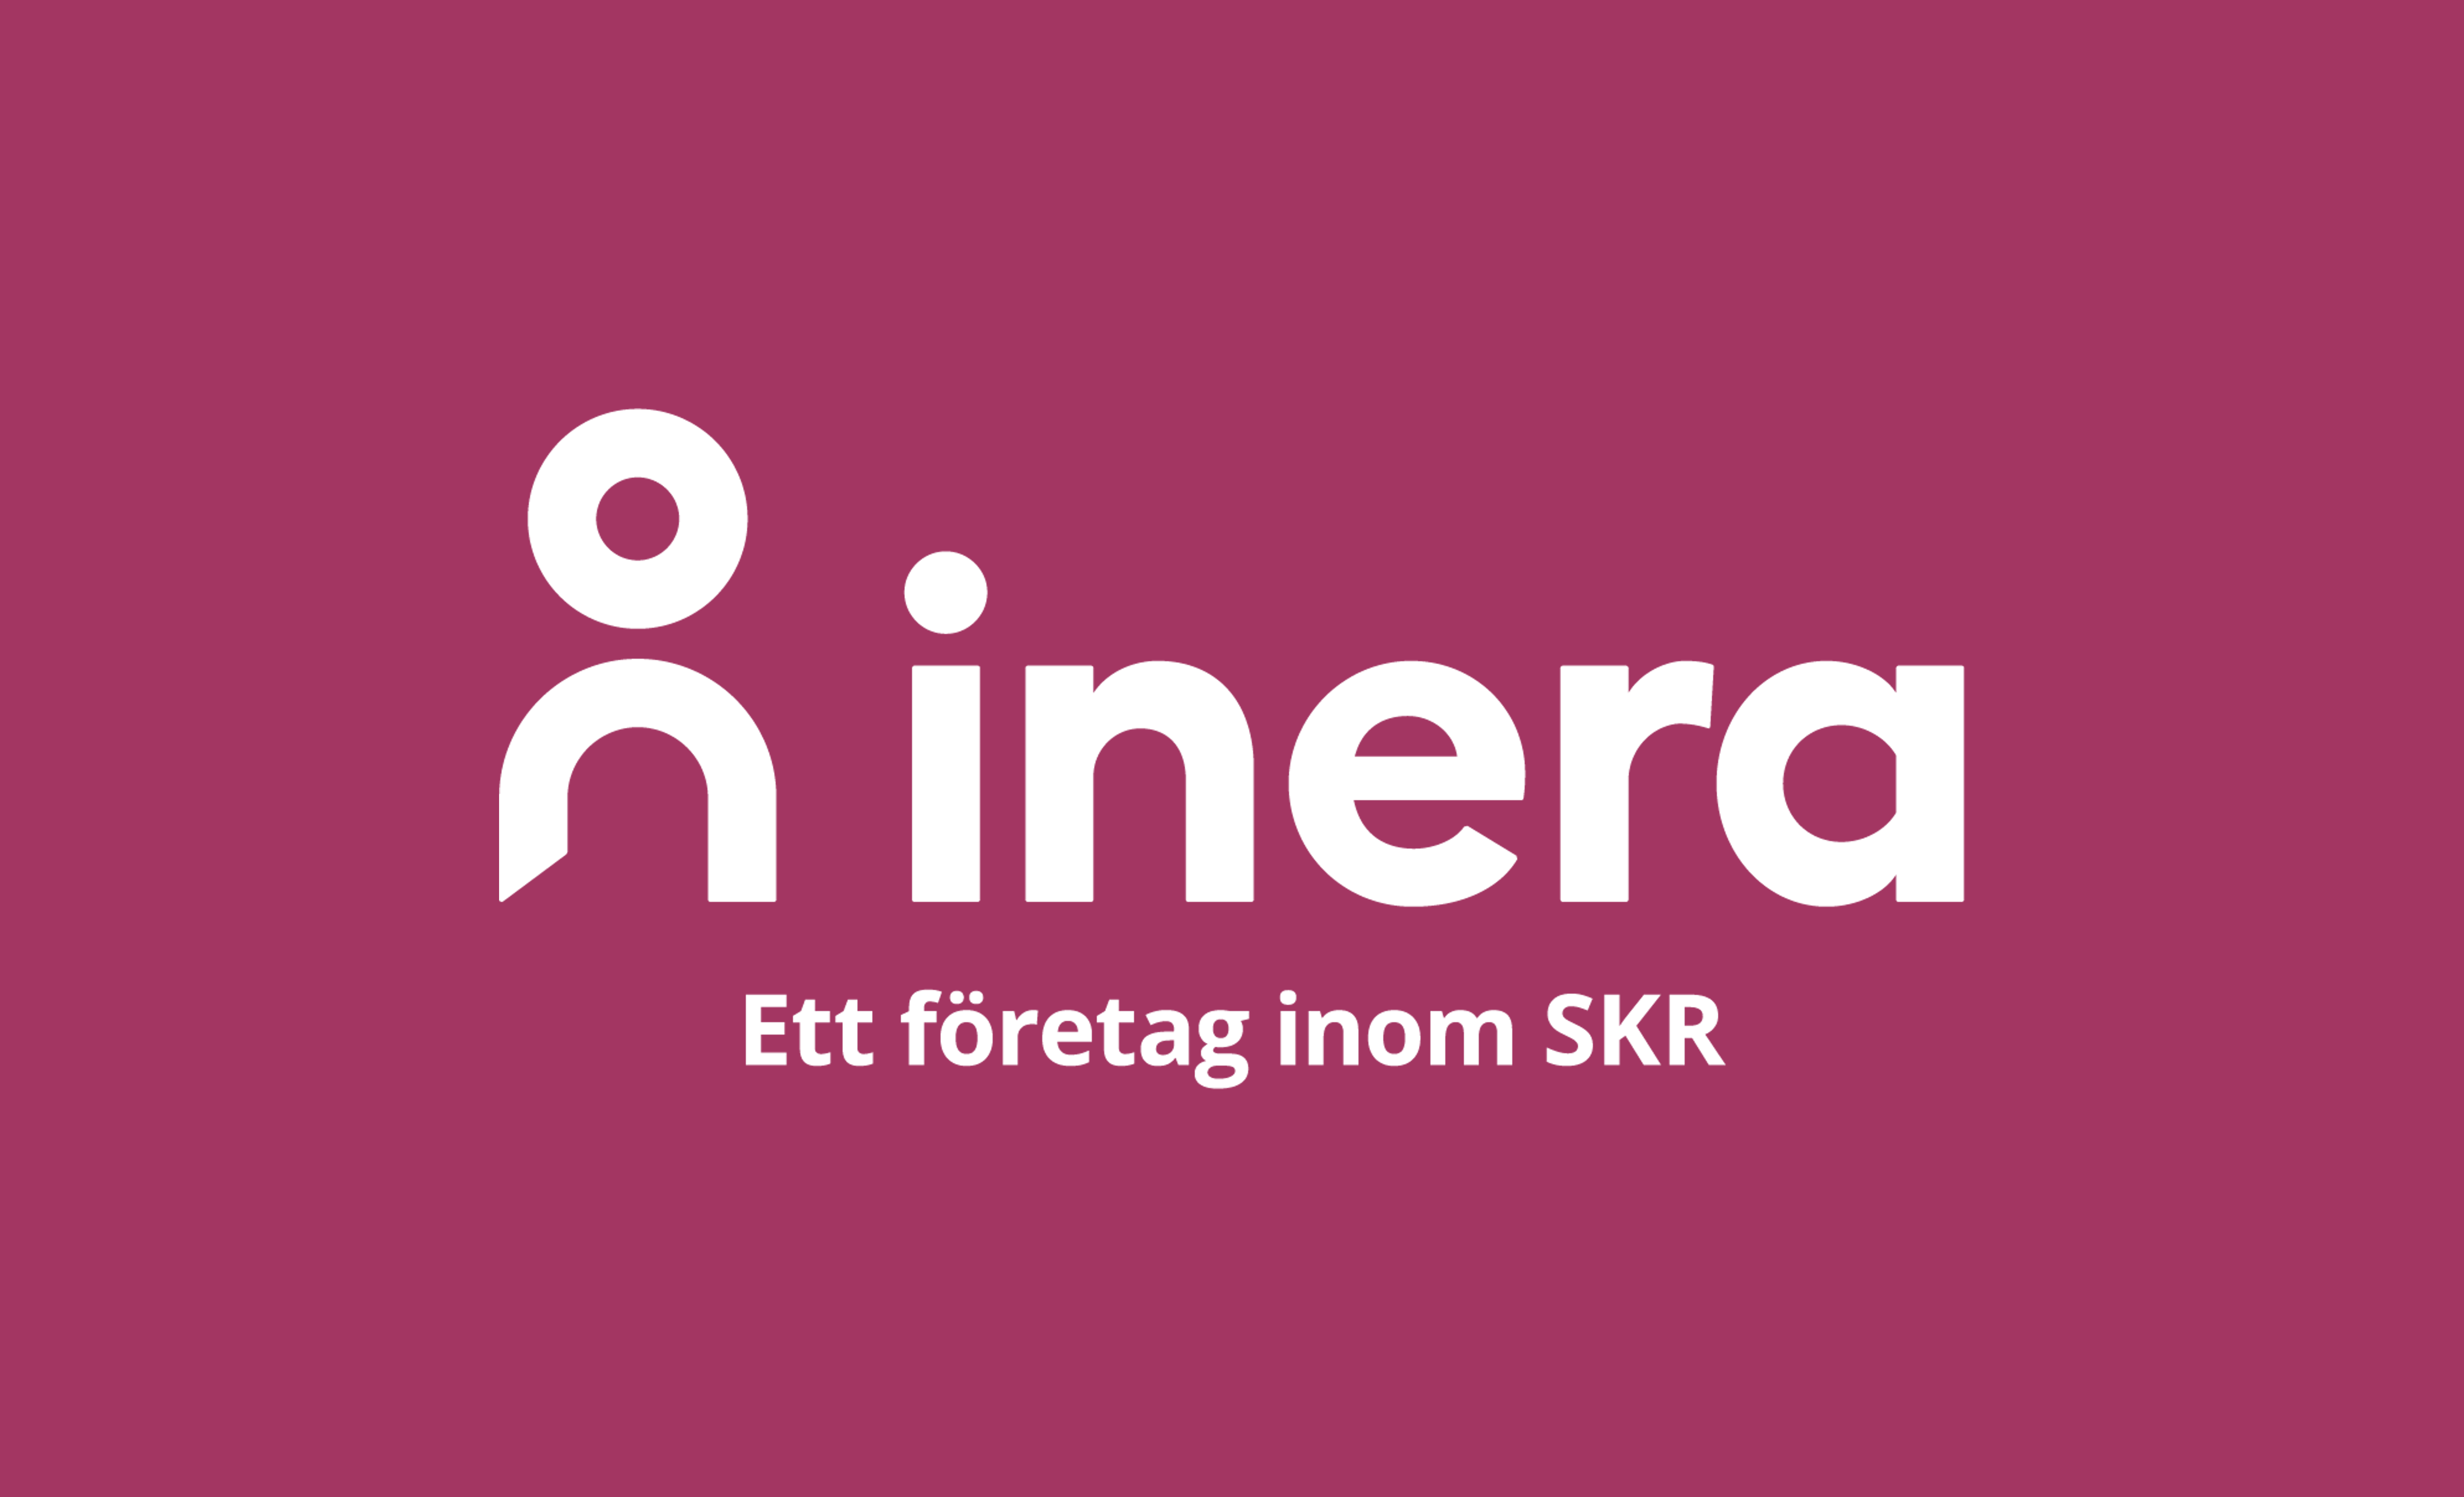 Ineras logotyp med tagline i negativt utförande mot Ineras primärfärg.